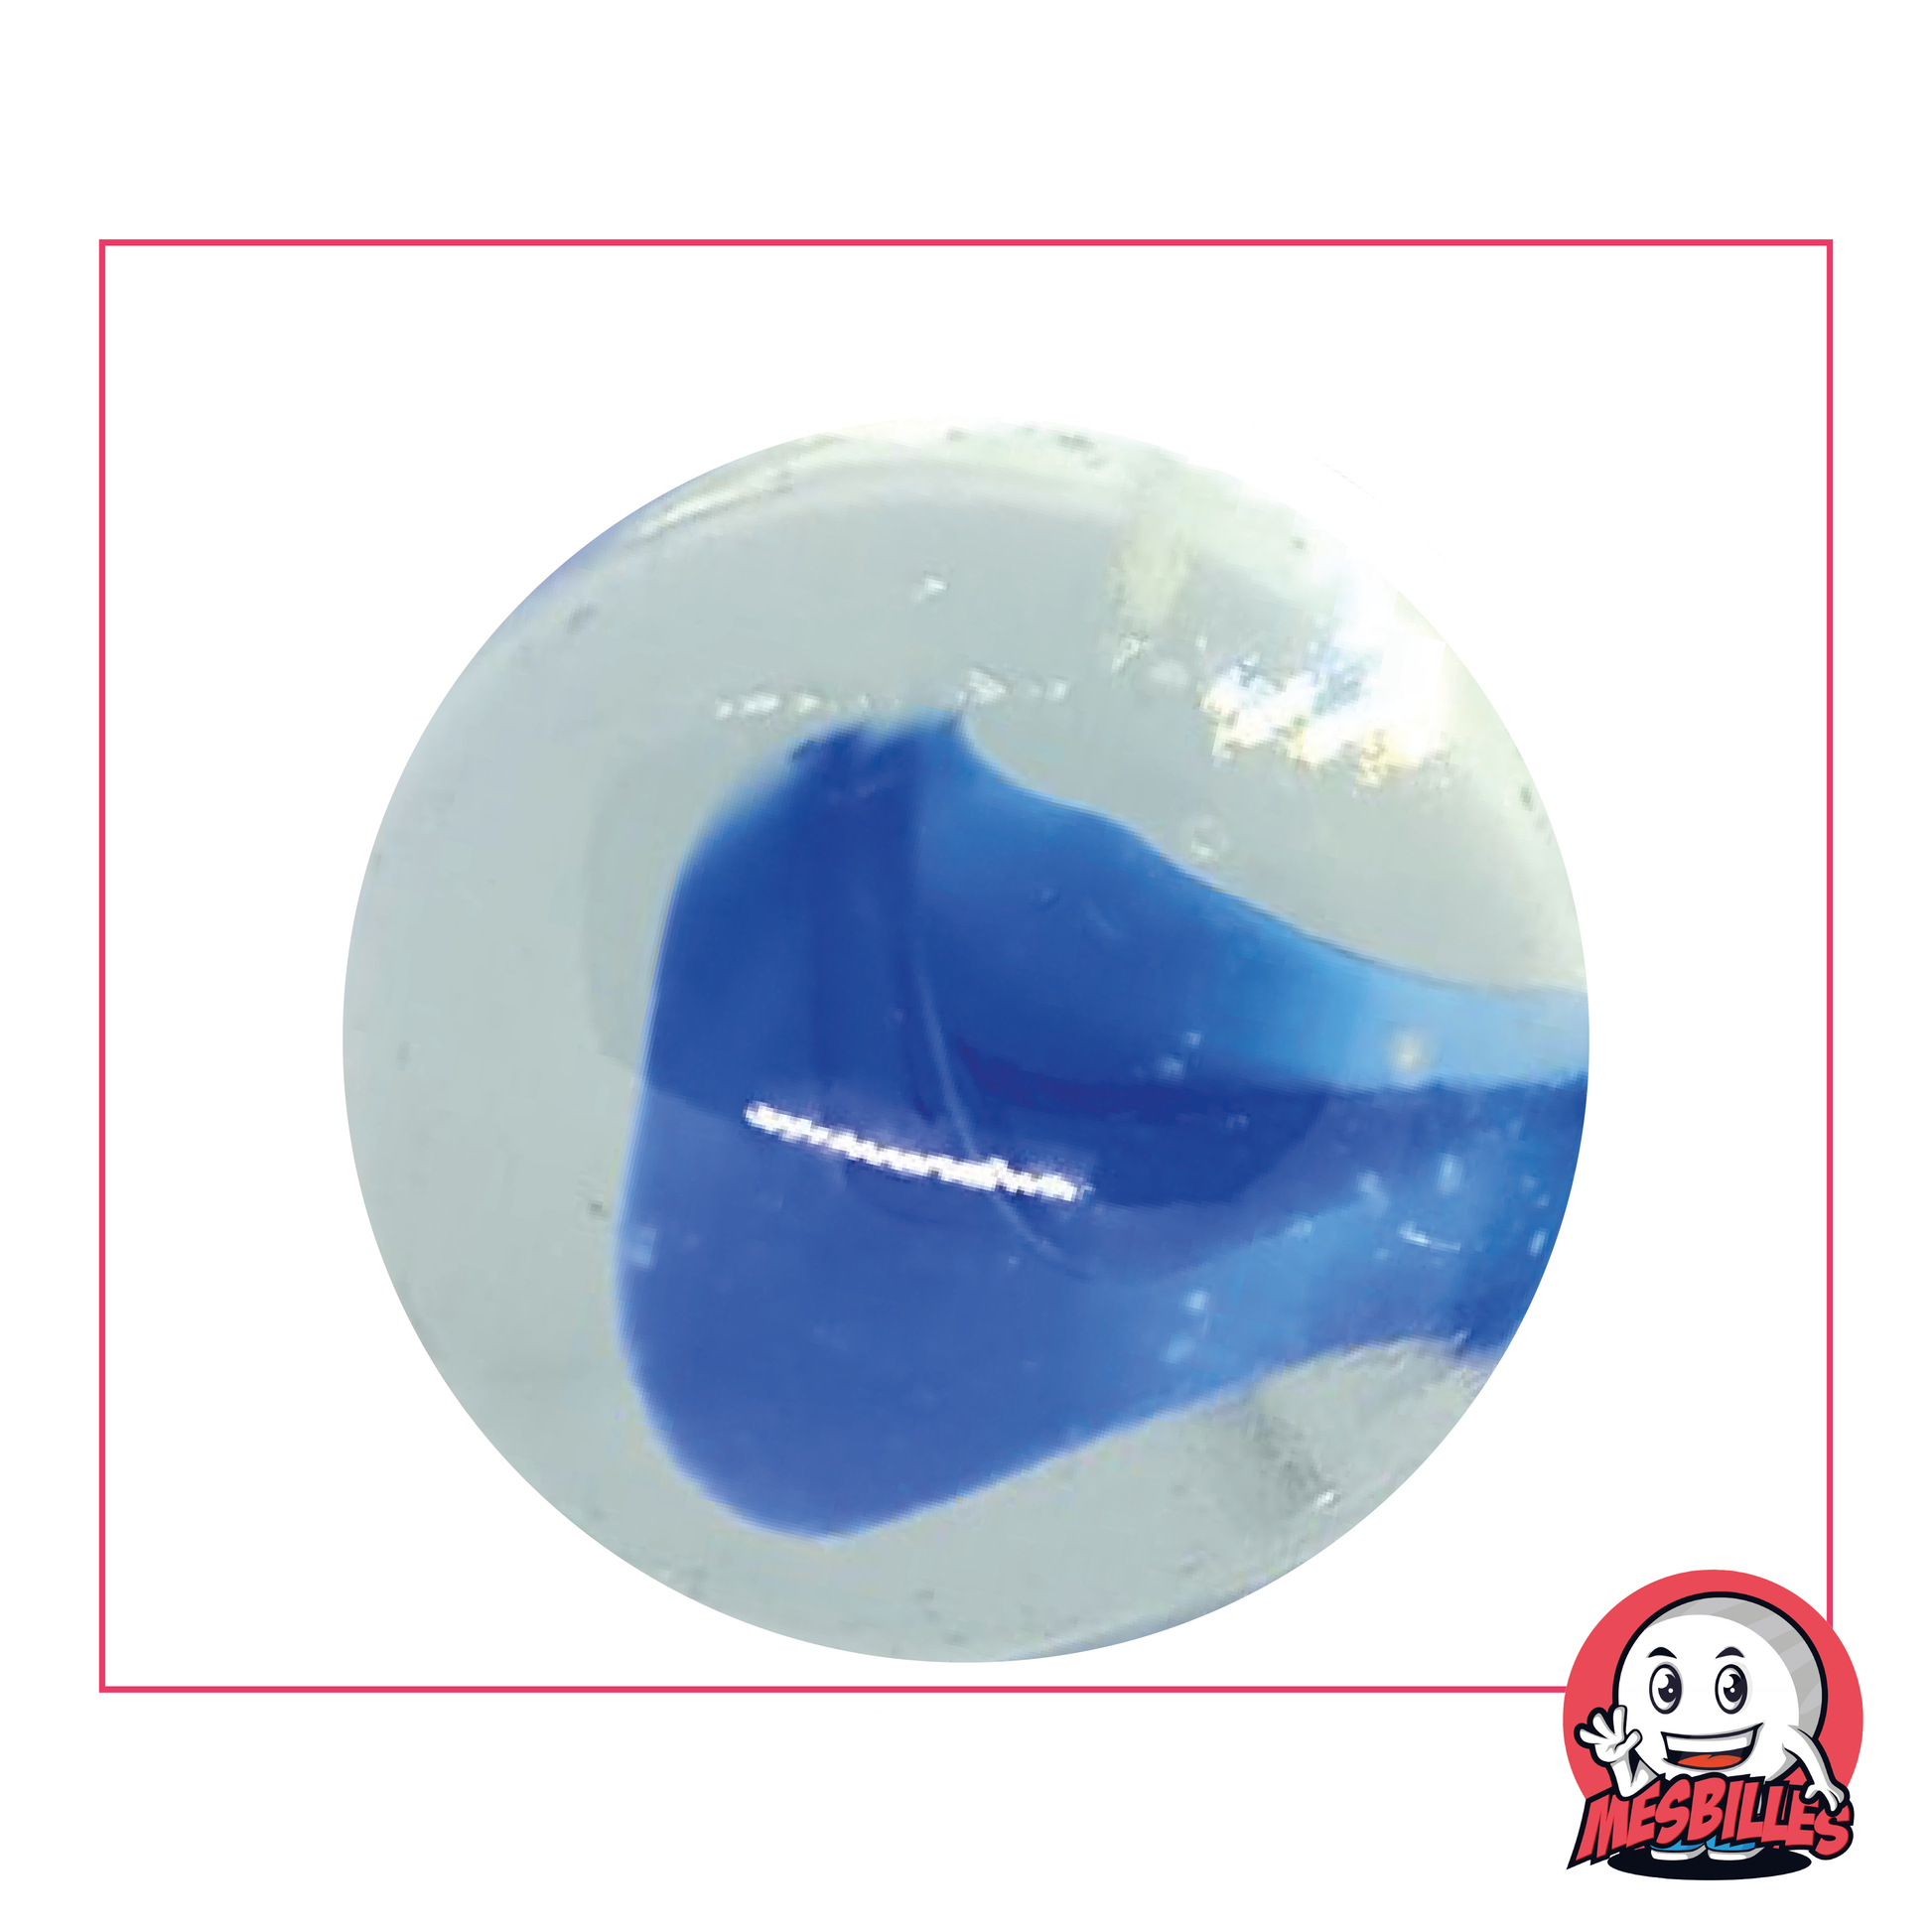 Bille Ours-Blanc 42 mm en verre, couleur cristal translucide et centre bleu ou blanc, grosse bille